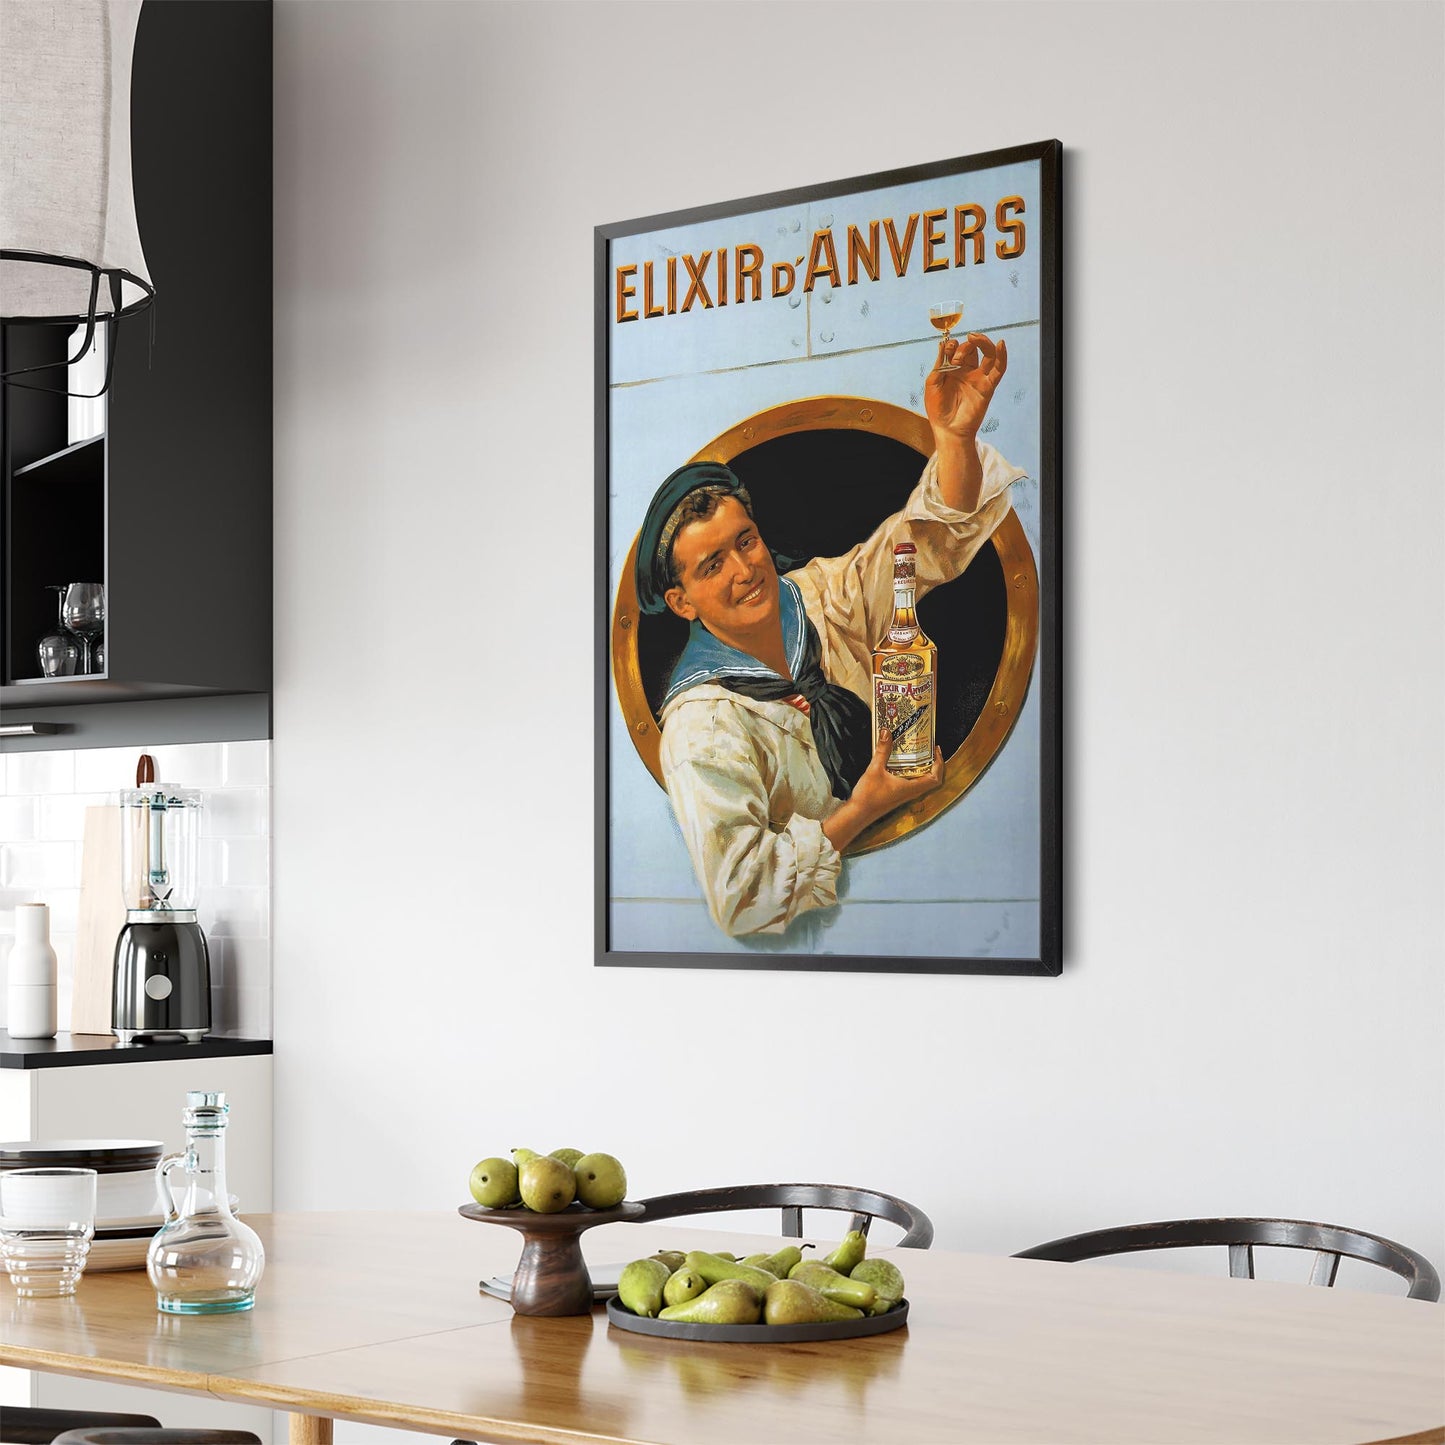 Elixir D'Anvers Belgian | Framed Vintage Poster